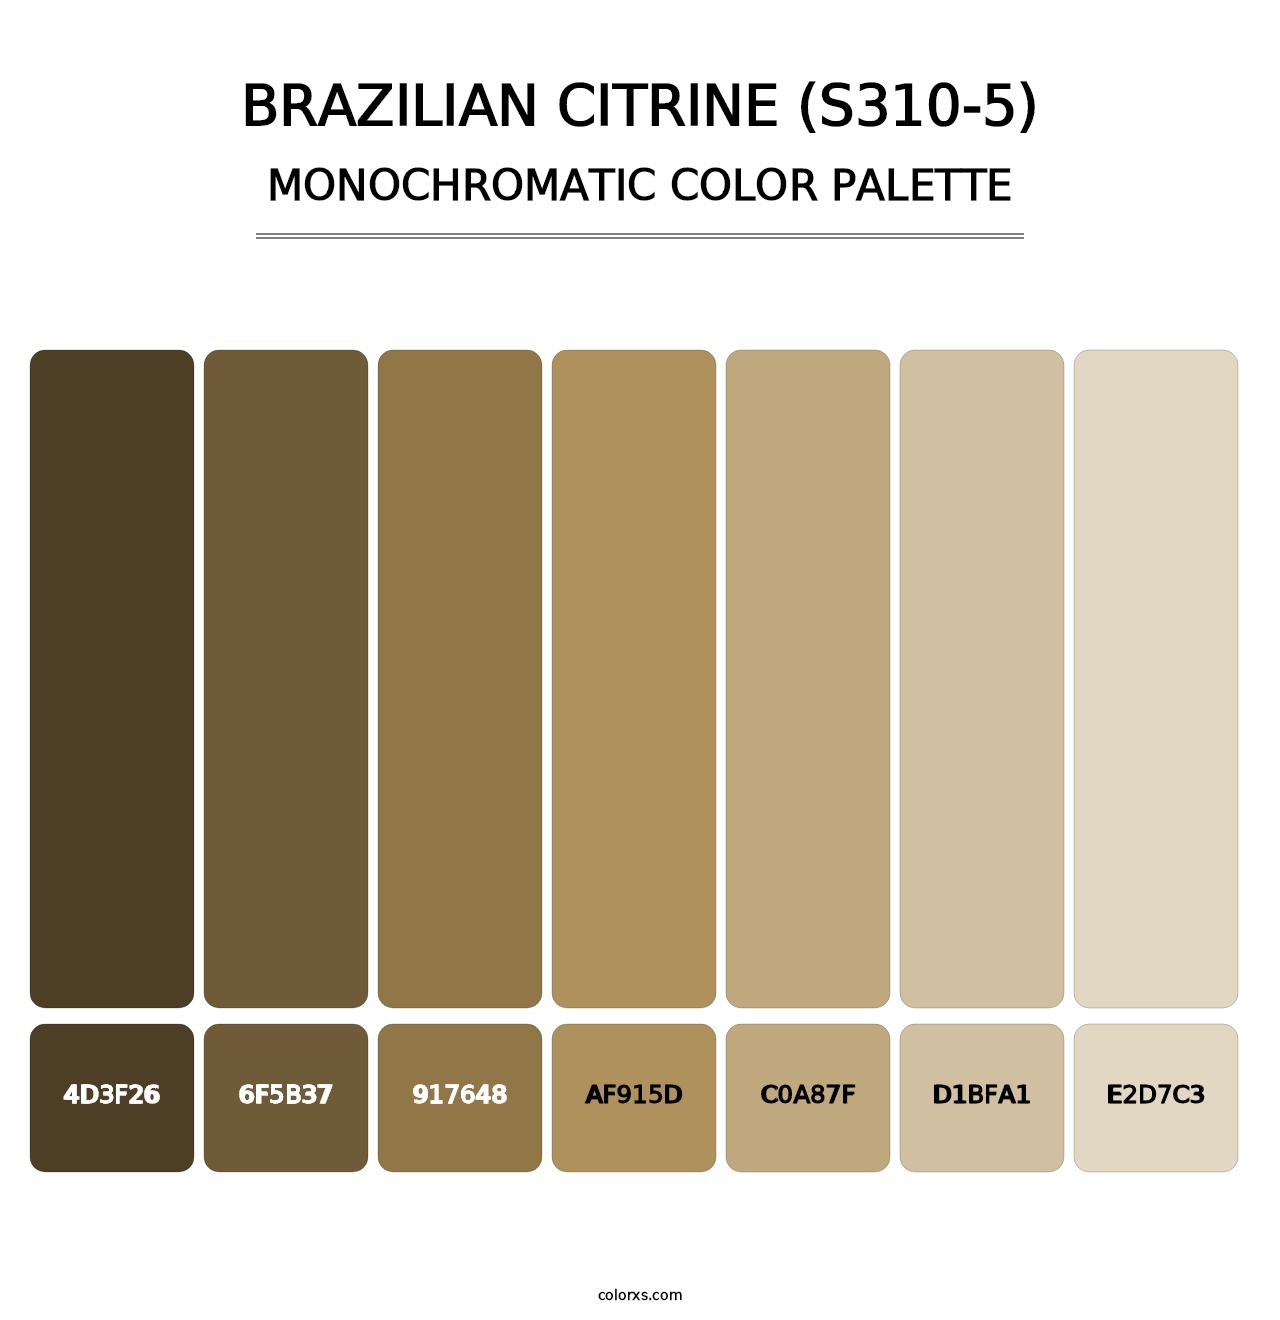 Brazilian Citrine (S310-5) - Monochromatic Color Palette